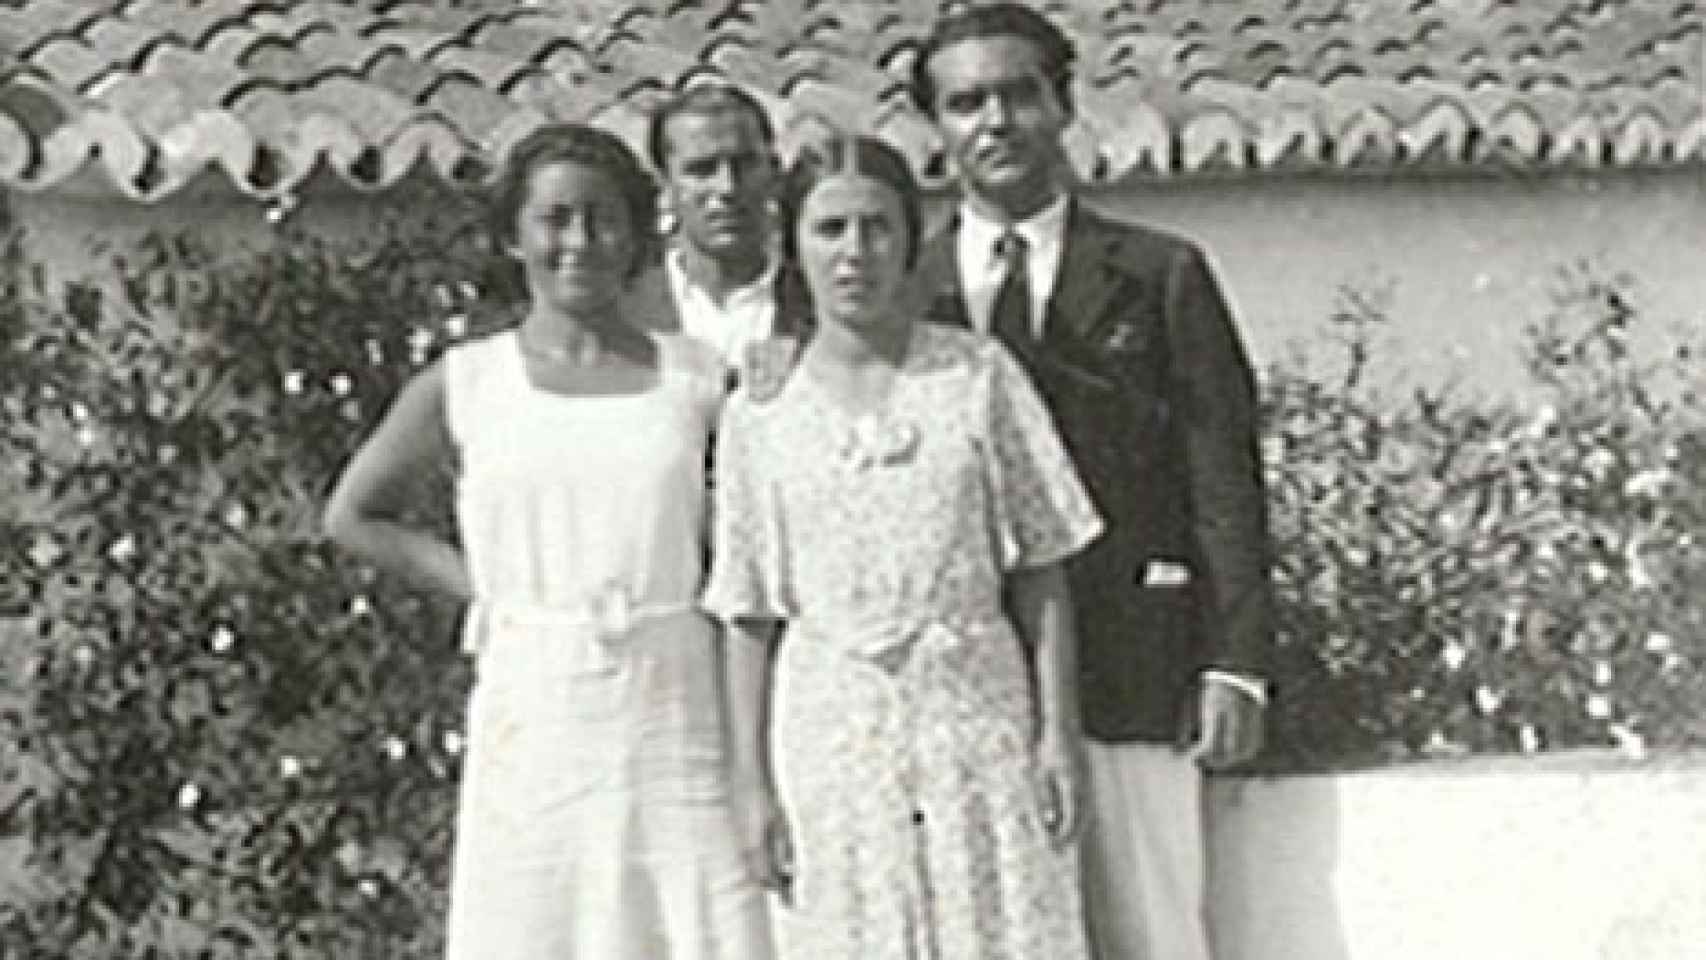 Ritama Troyano, Isabel García Lorca, Rafael Troyano y Federico García Lorca, en Nerja (1931).